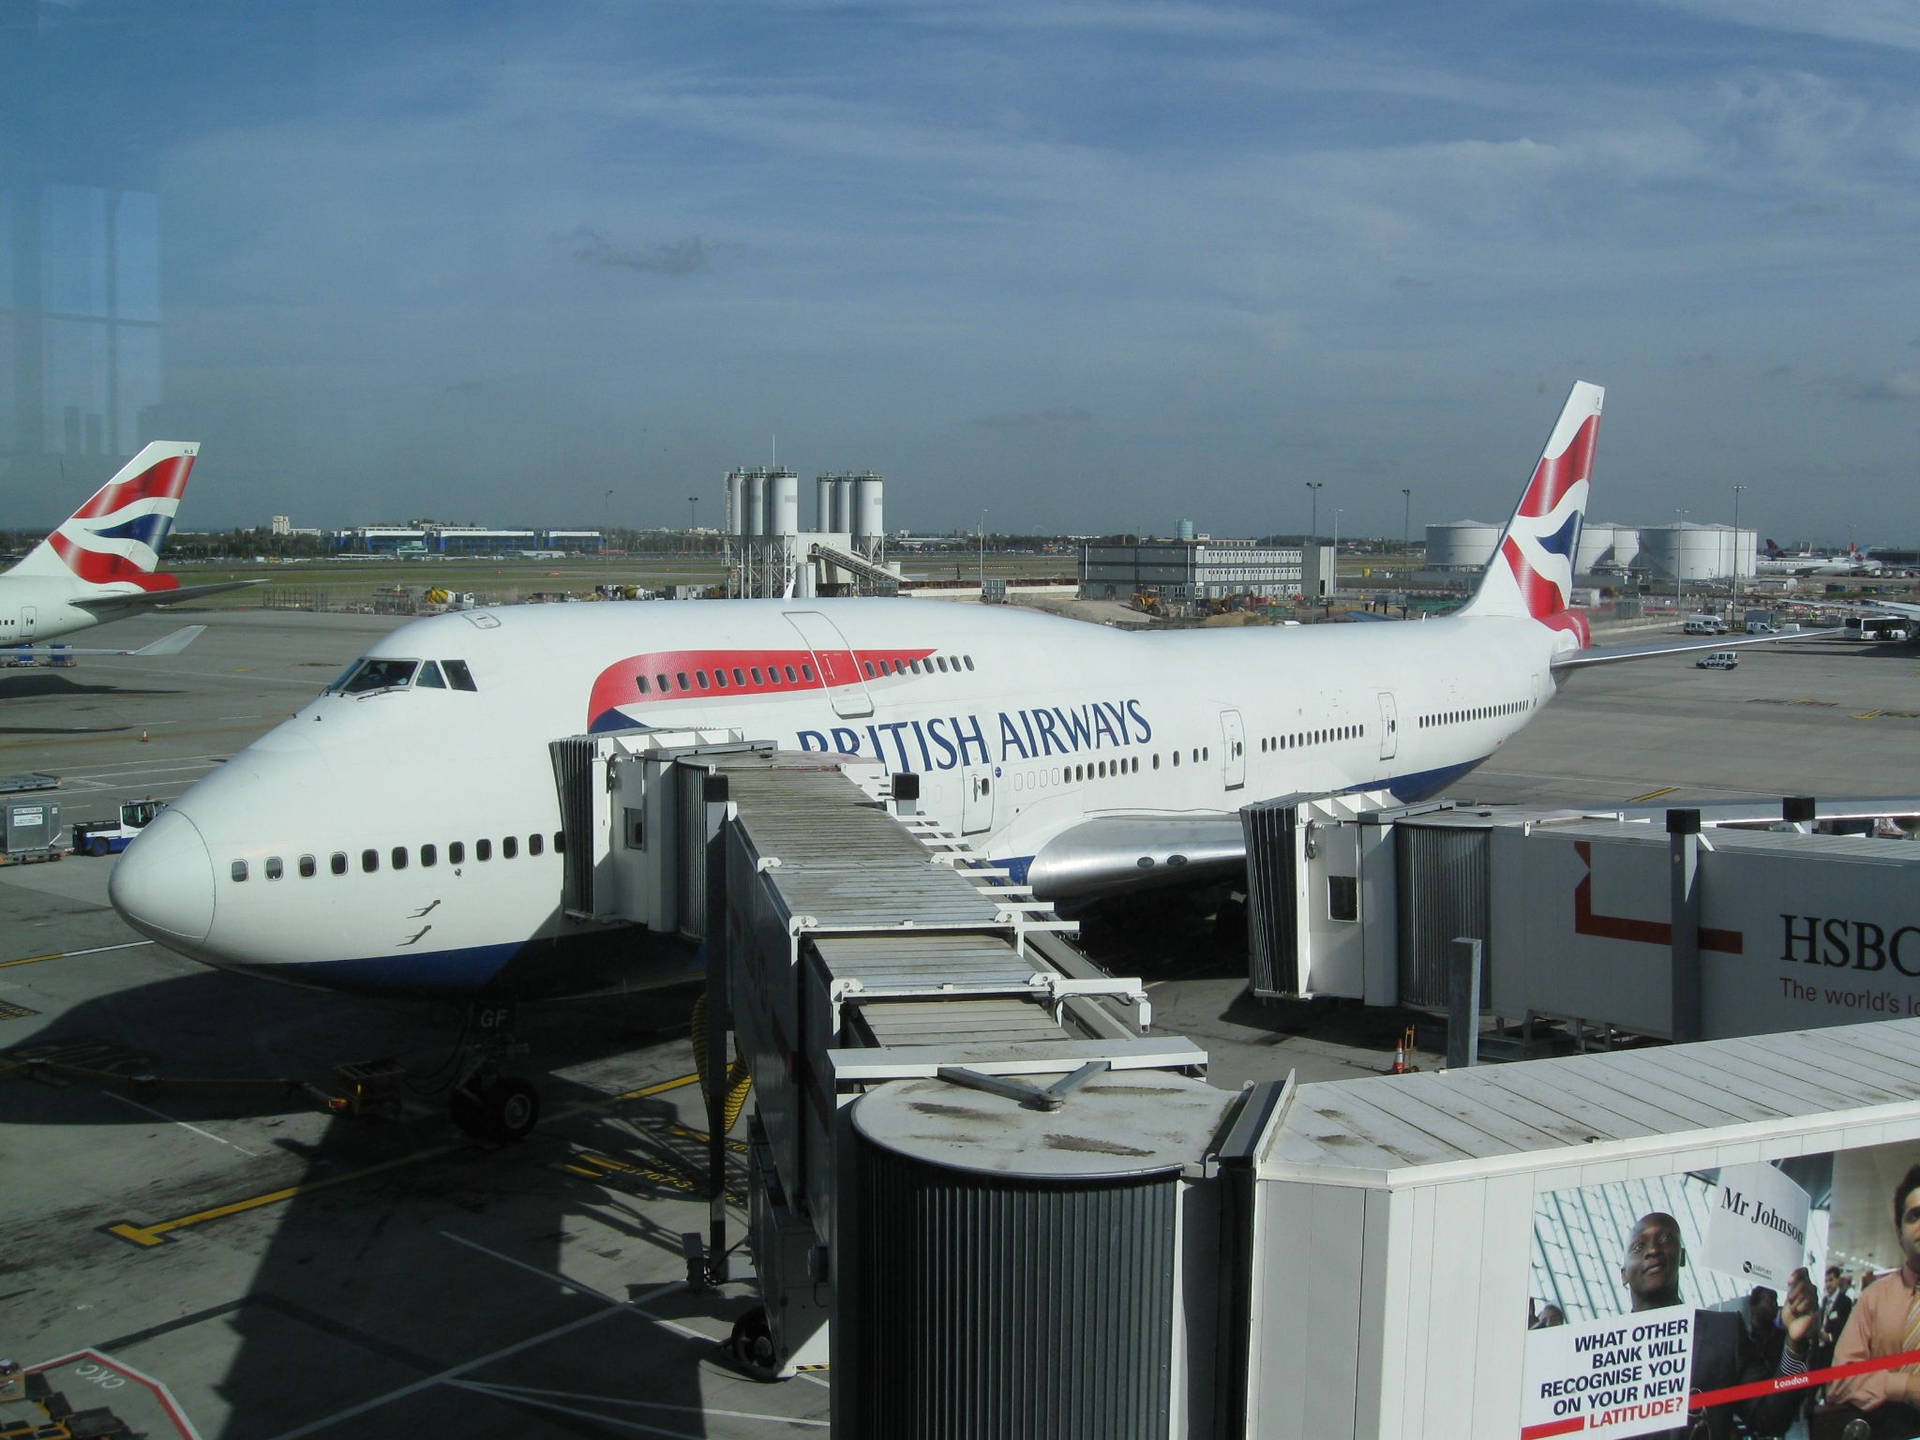 Brittiskaairways Boeing 747 På London Heathrow Flygplats. Wallpaper